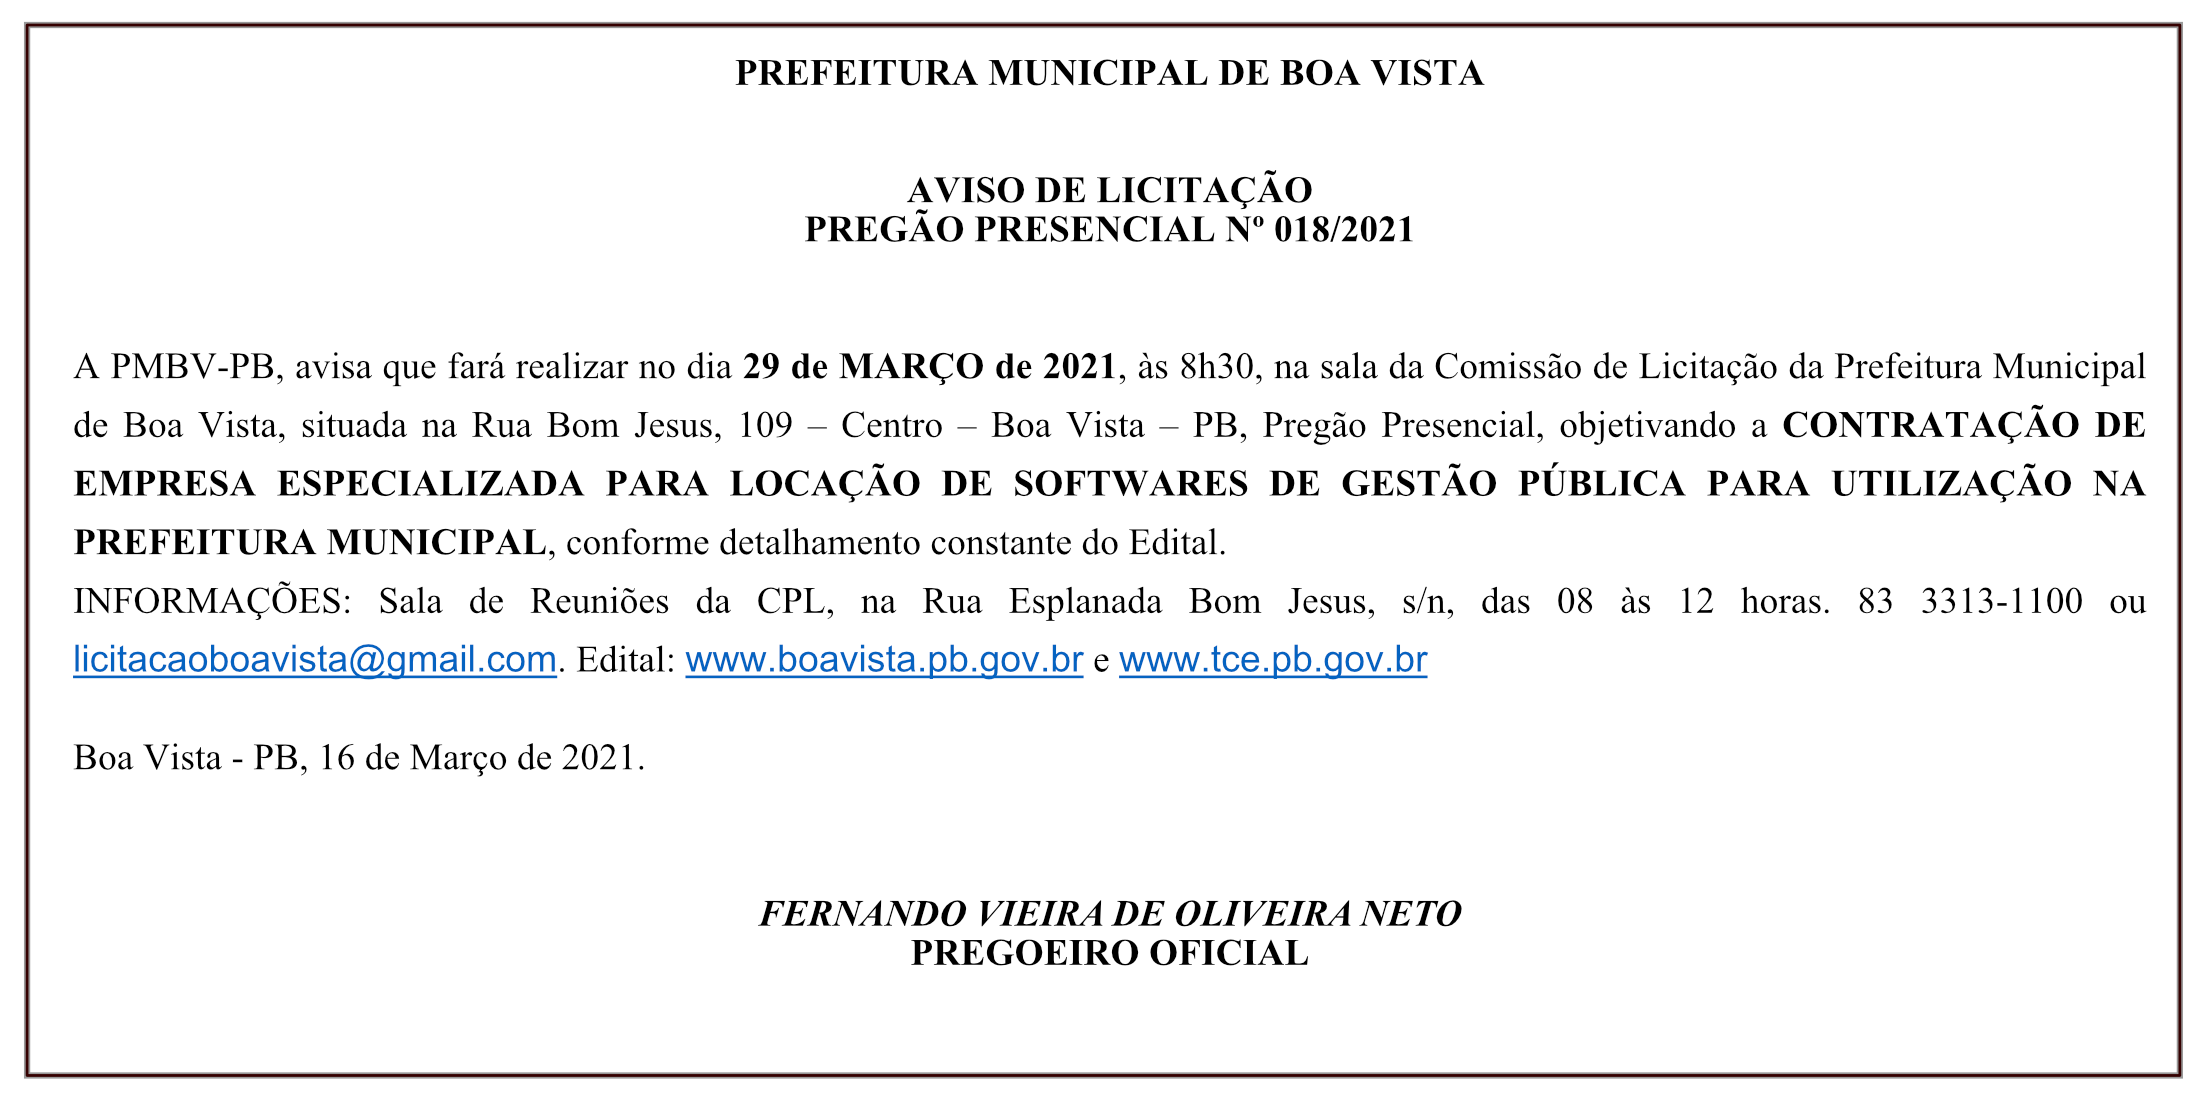 PREFEITURA MUNICIPAL DE BOA VISTA – AVISO DE LICITAÇÃO – PREGÃO PRESENCIAL Nº 018/2021